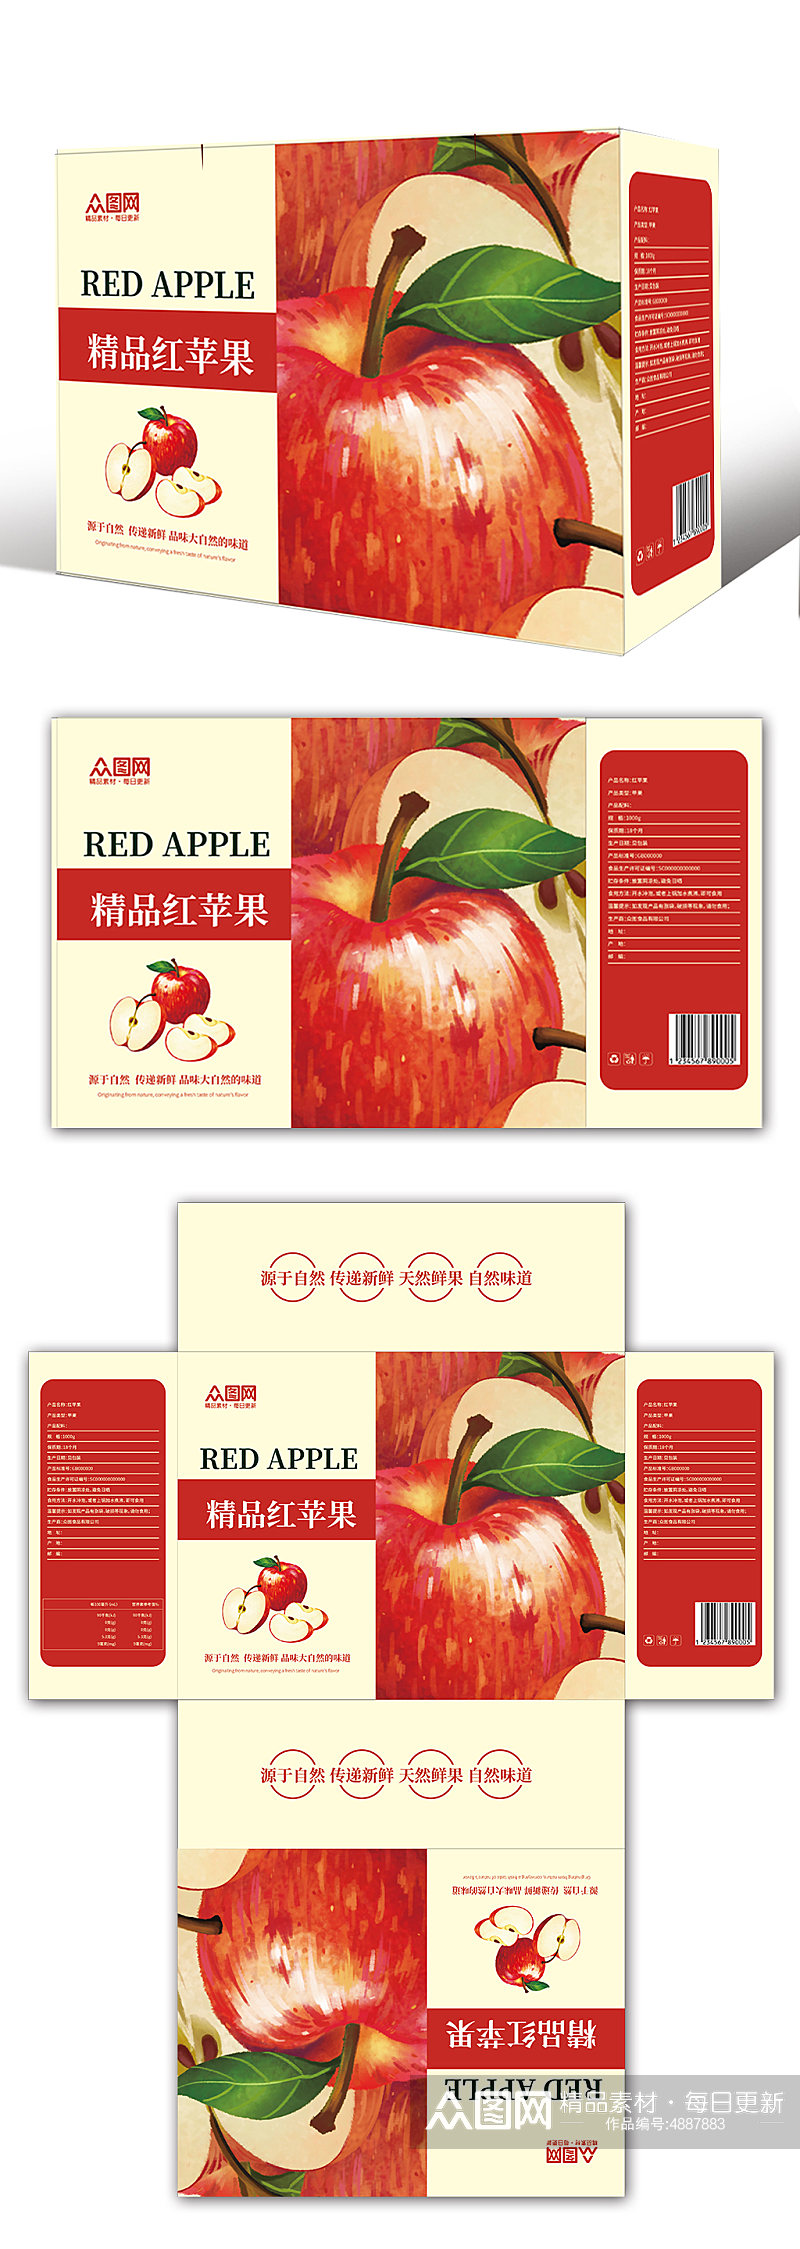 精品红苹果农产品苹果水果包装礼盒设计素材